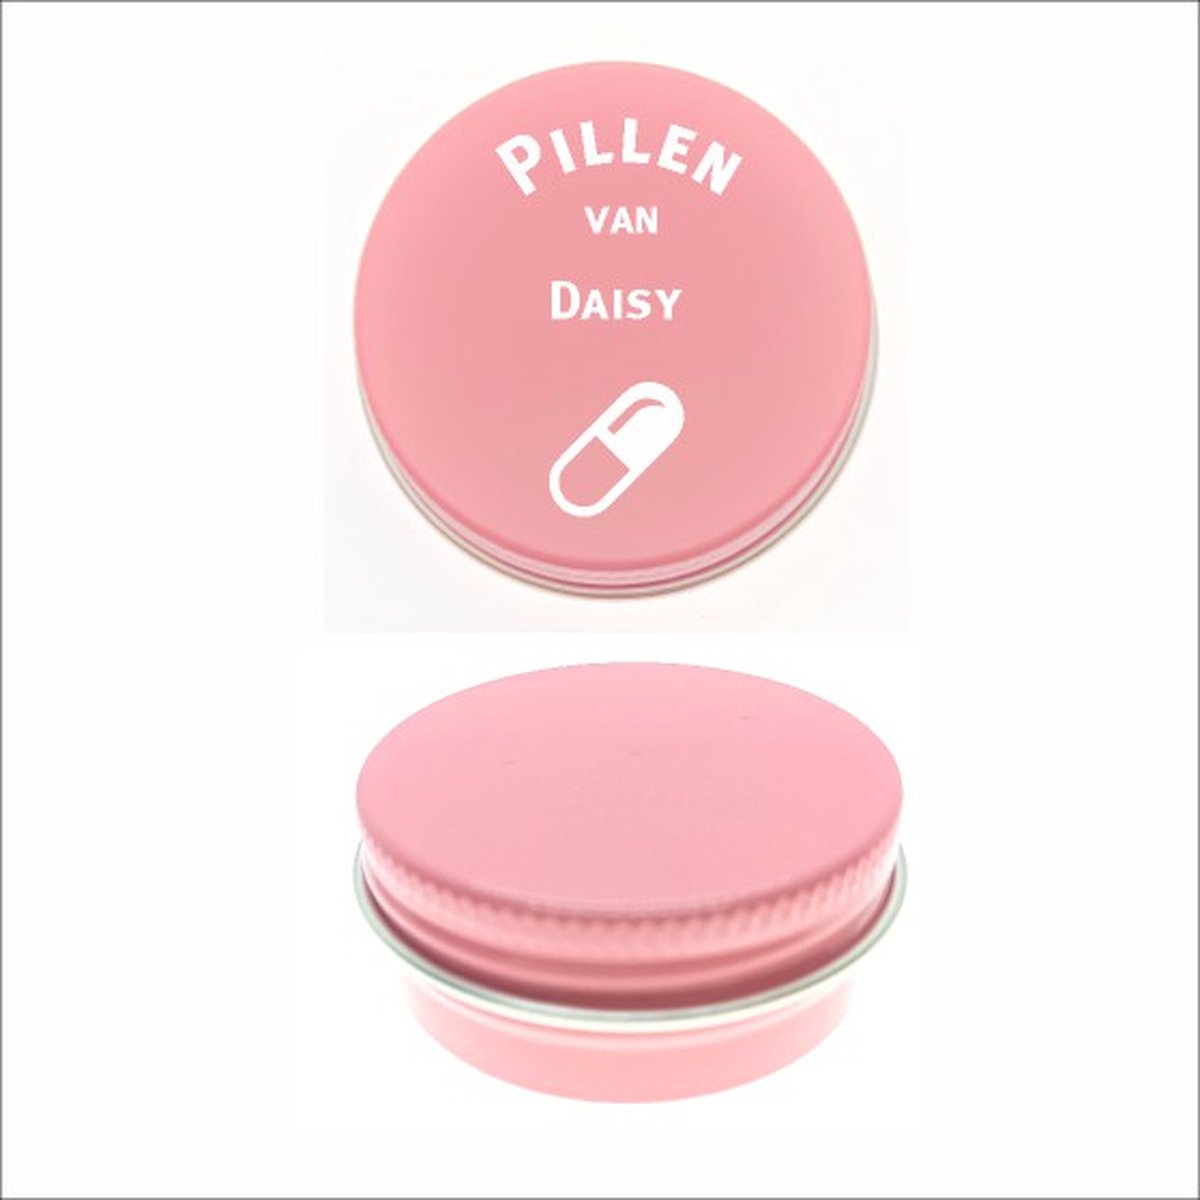 Pillen Blikje Met Naam Gravering - Daisy